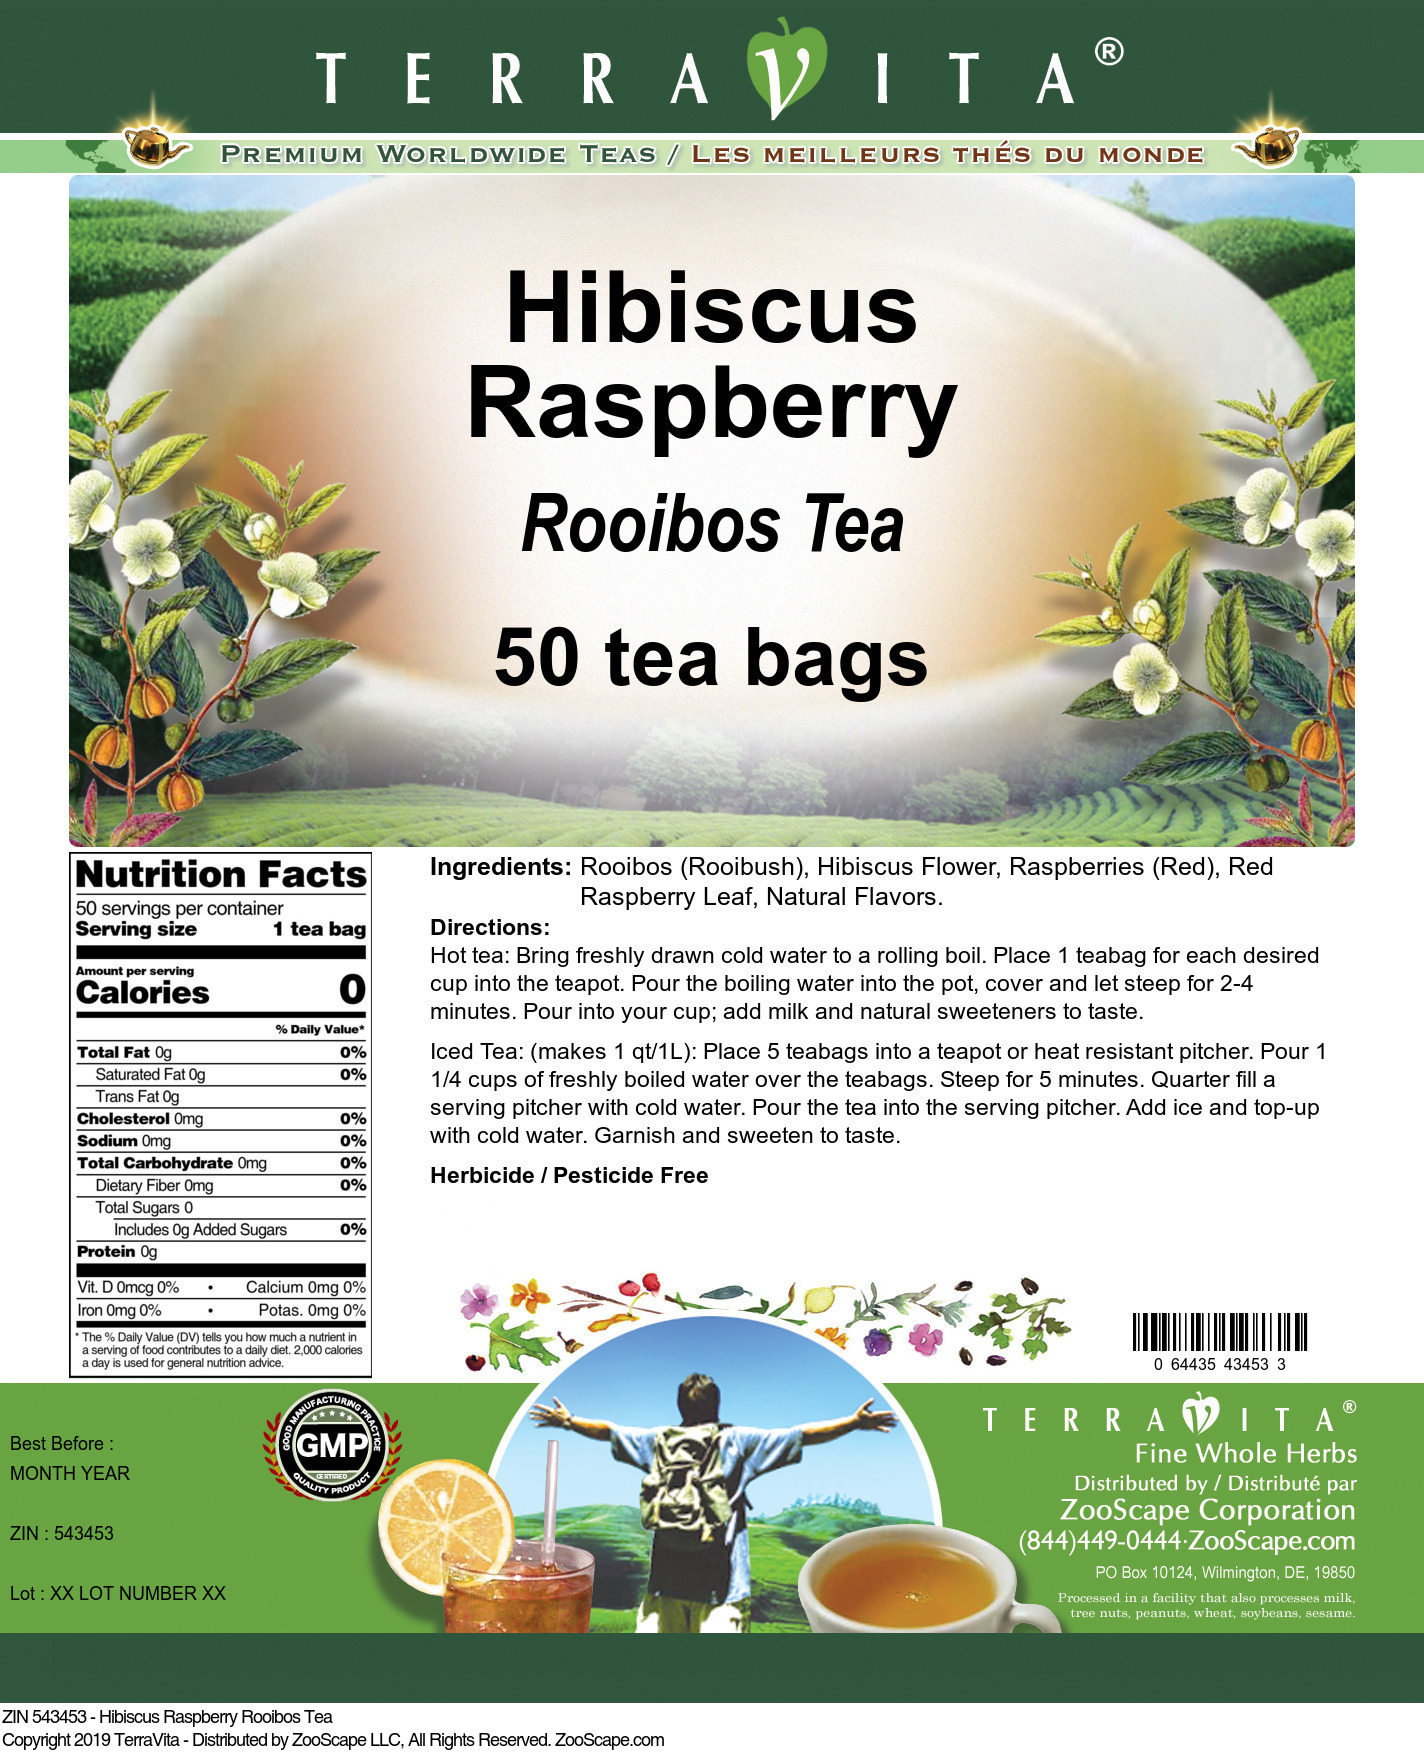 Hibiscus Raspberry Rooibos Tea - Label